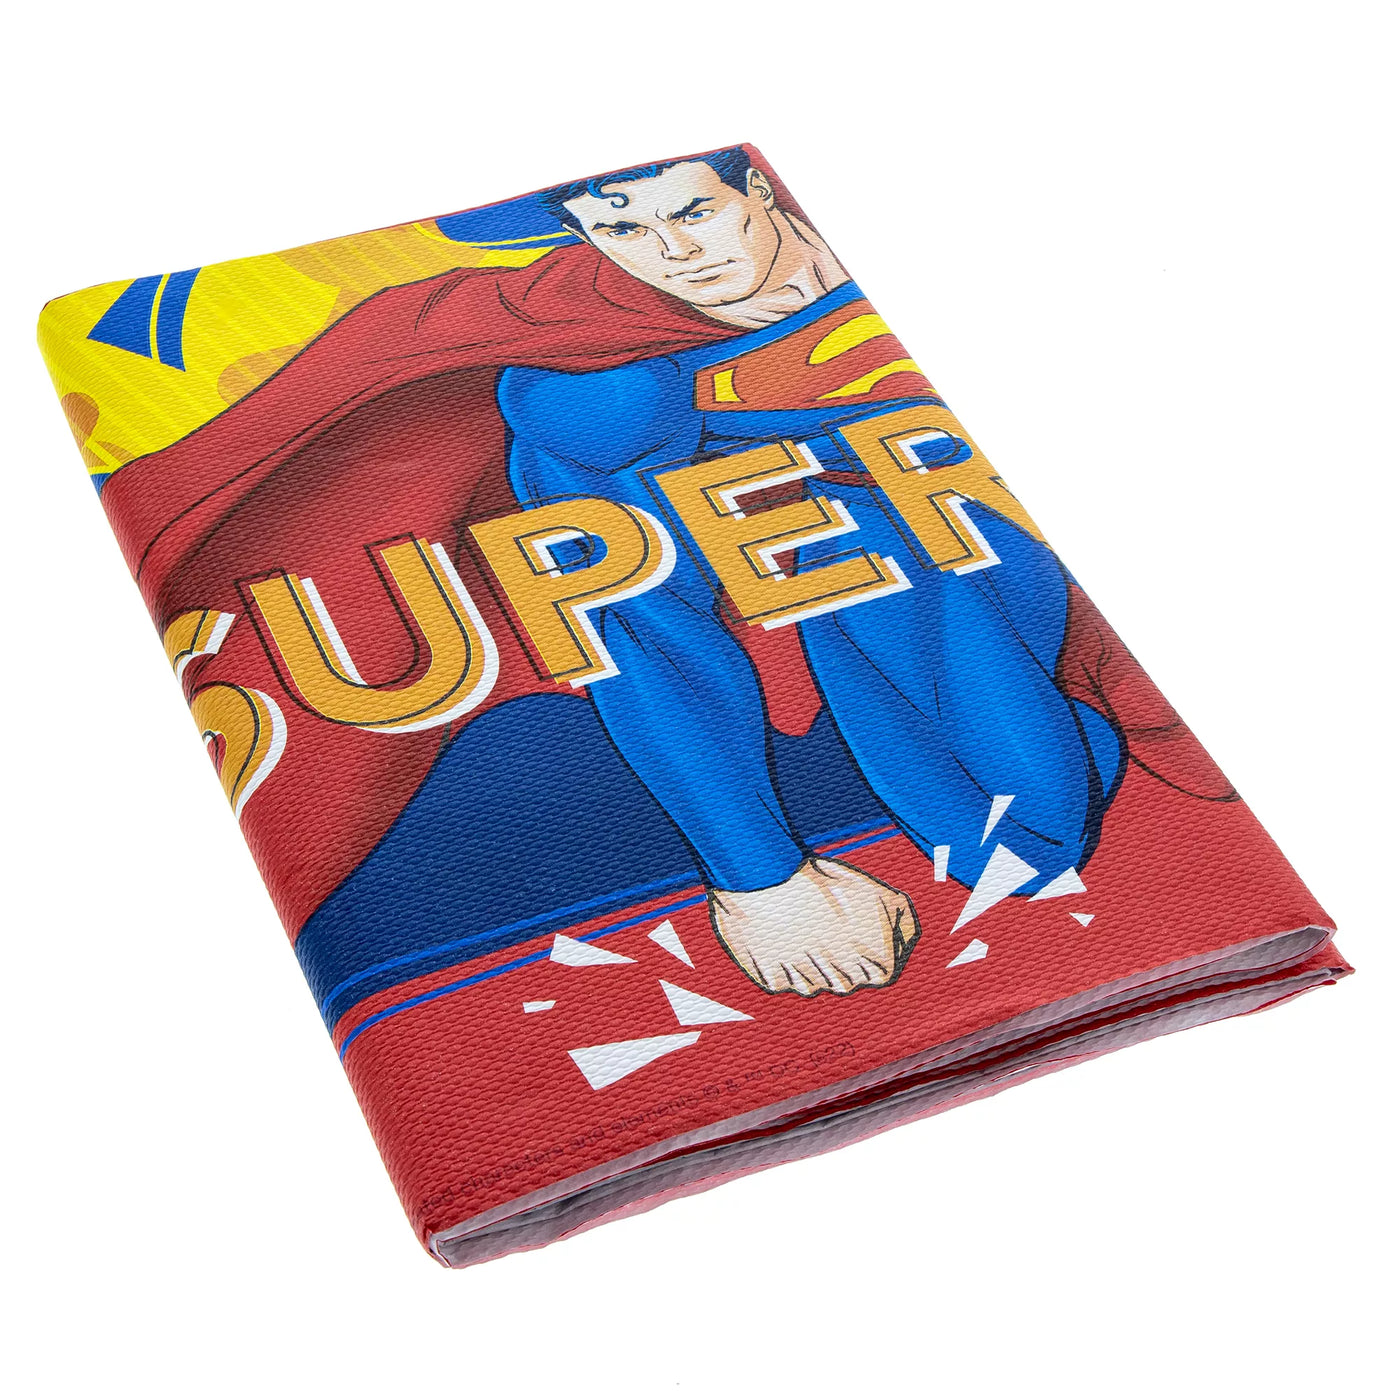 Tischdecke Superman, 120x180cm